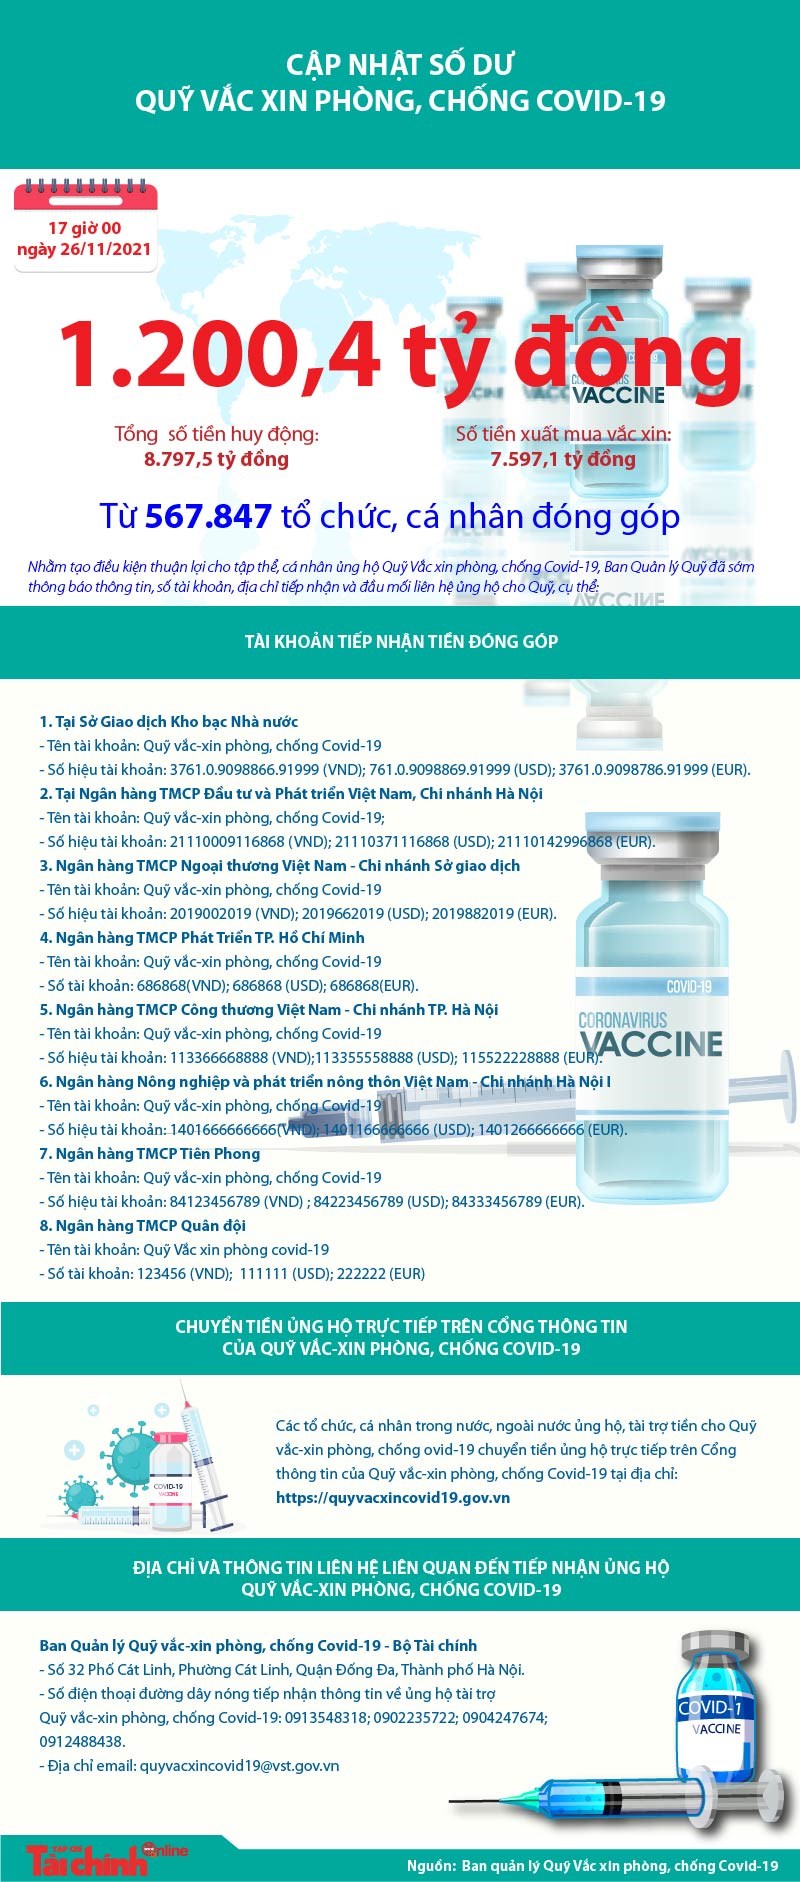 Quỹ Vắc xin phòng, chống COVID-19 còn dư 1.200,4 tỷ đồng - Ảnh 1